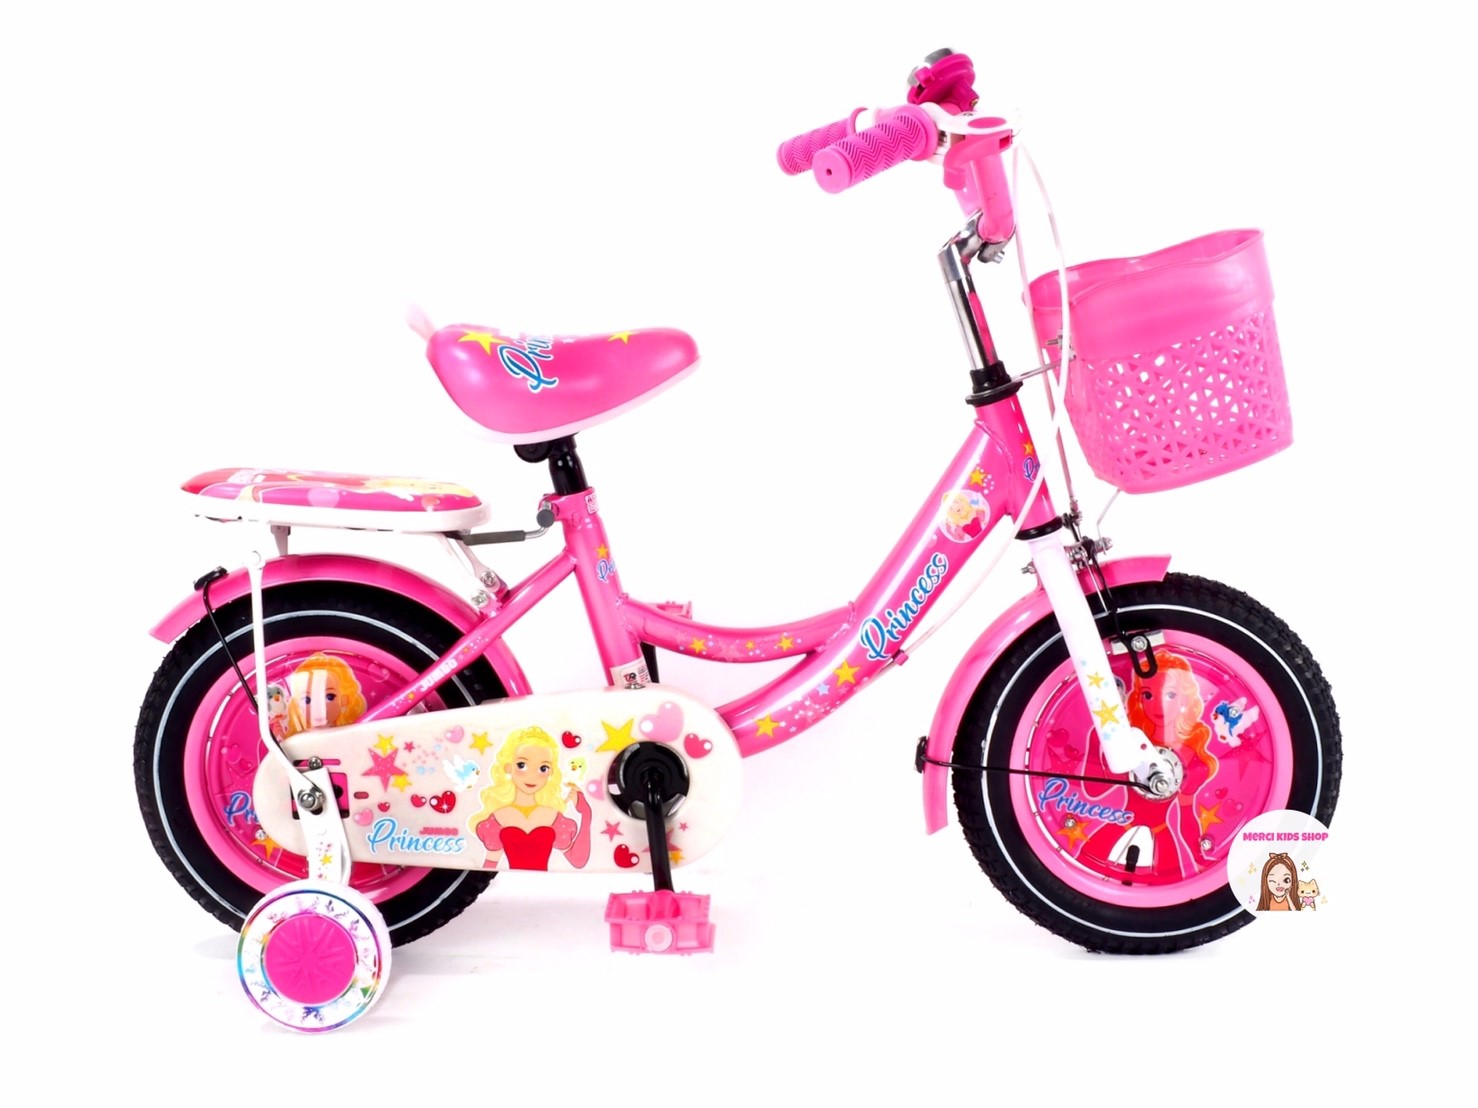 **ล้อครอบ**  จักรยานเด็ก 12และ16นิ้ว เจ้าหญิง รถจักรยานเจ้าหญิง จักรยานเจ้าหญิง รถจักรยานเด็ก Ella / 2121 / 2122